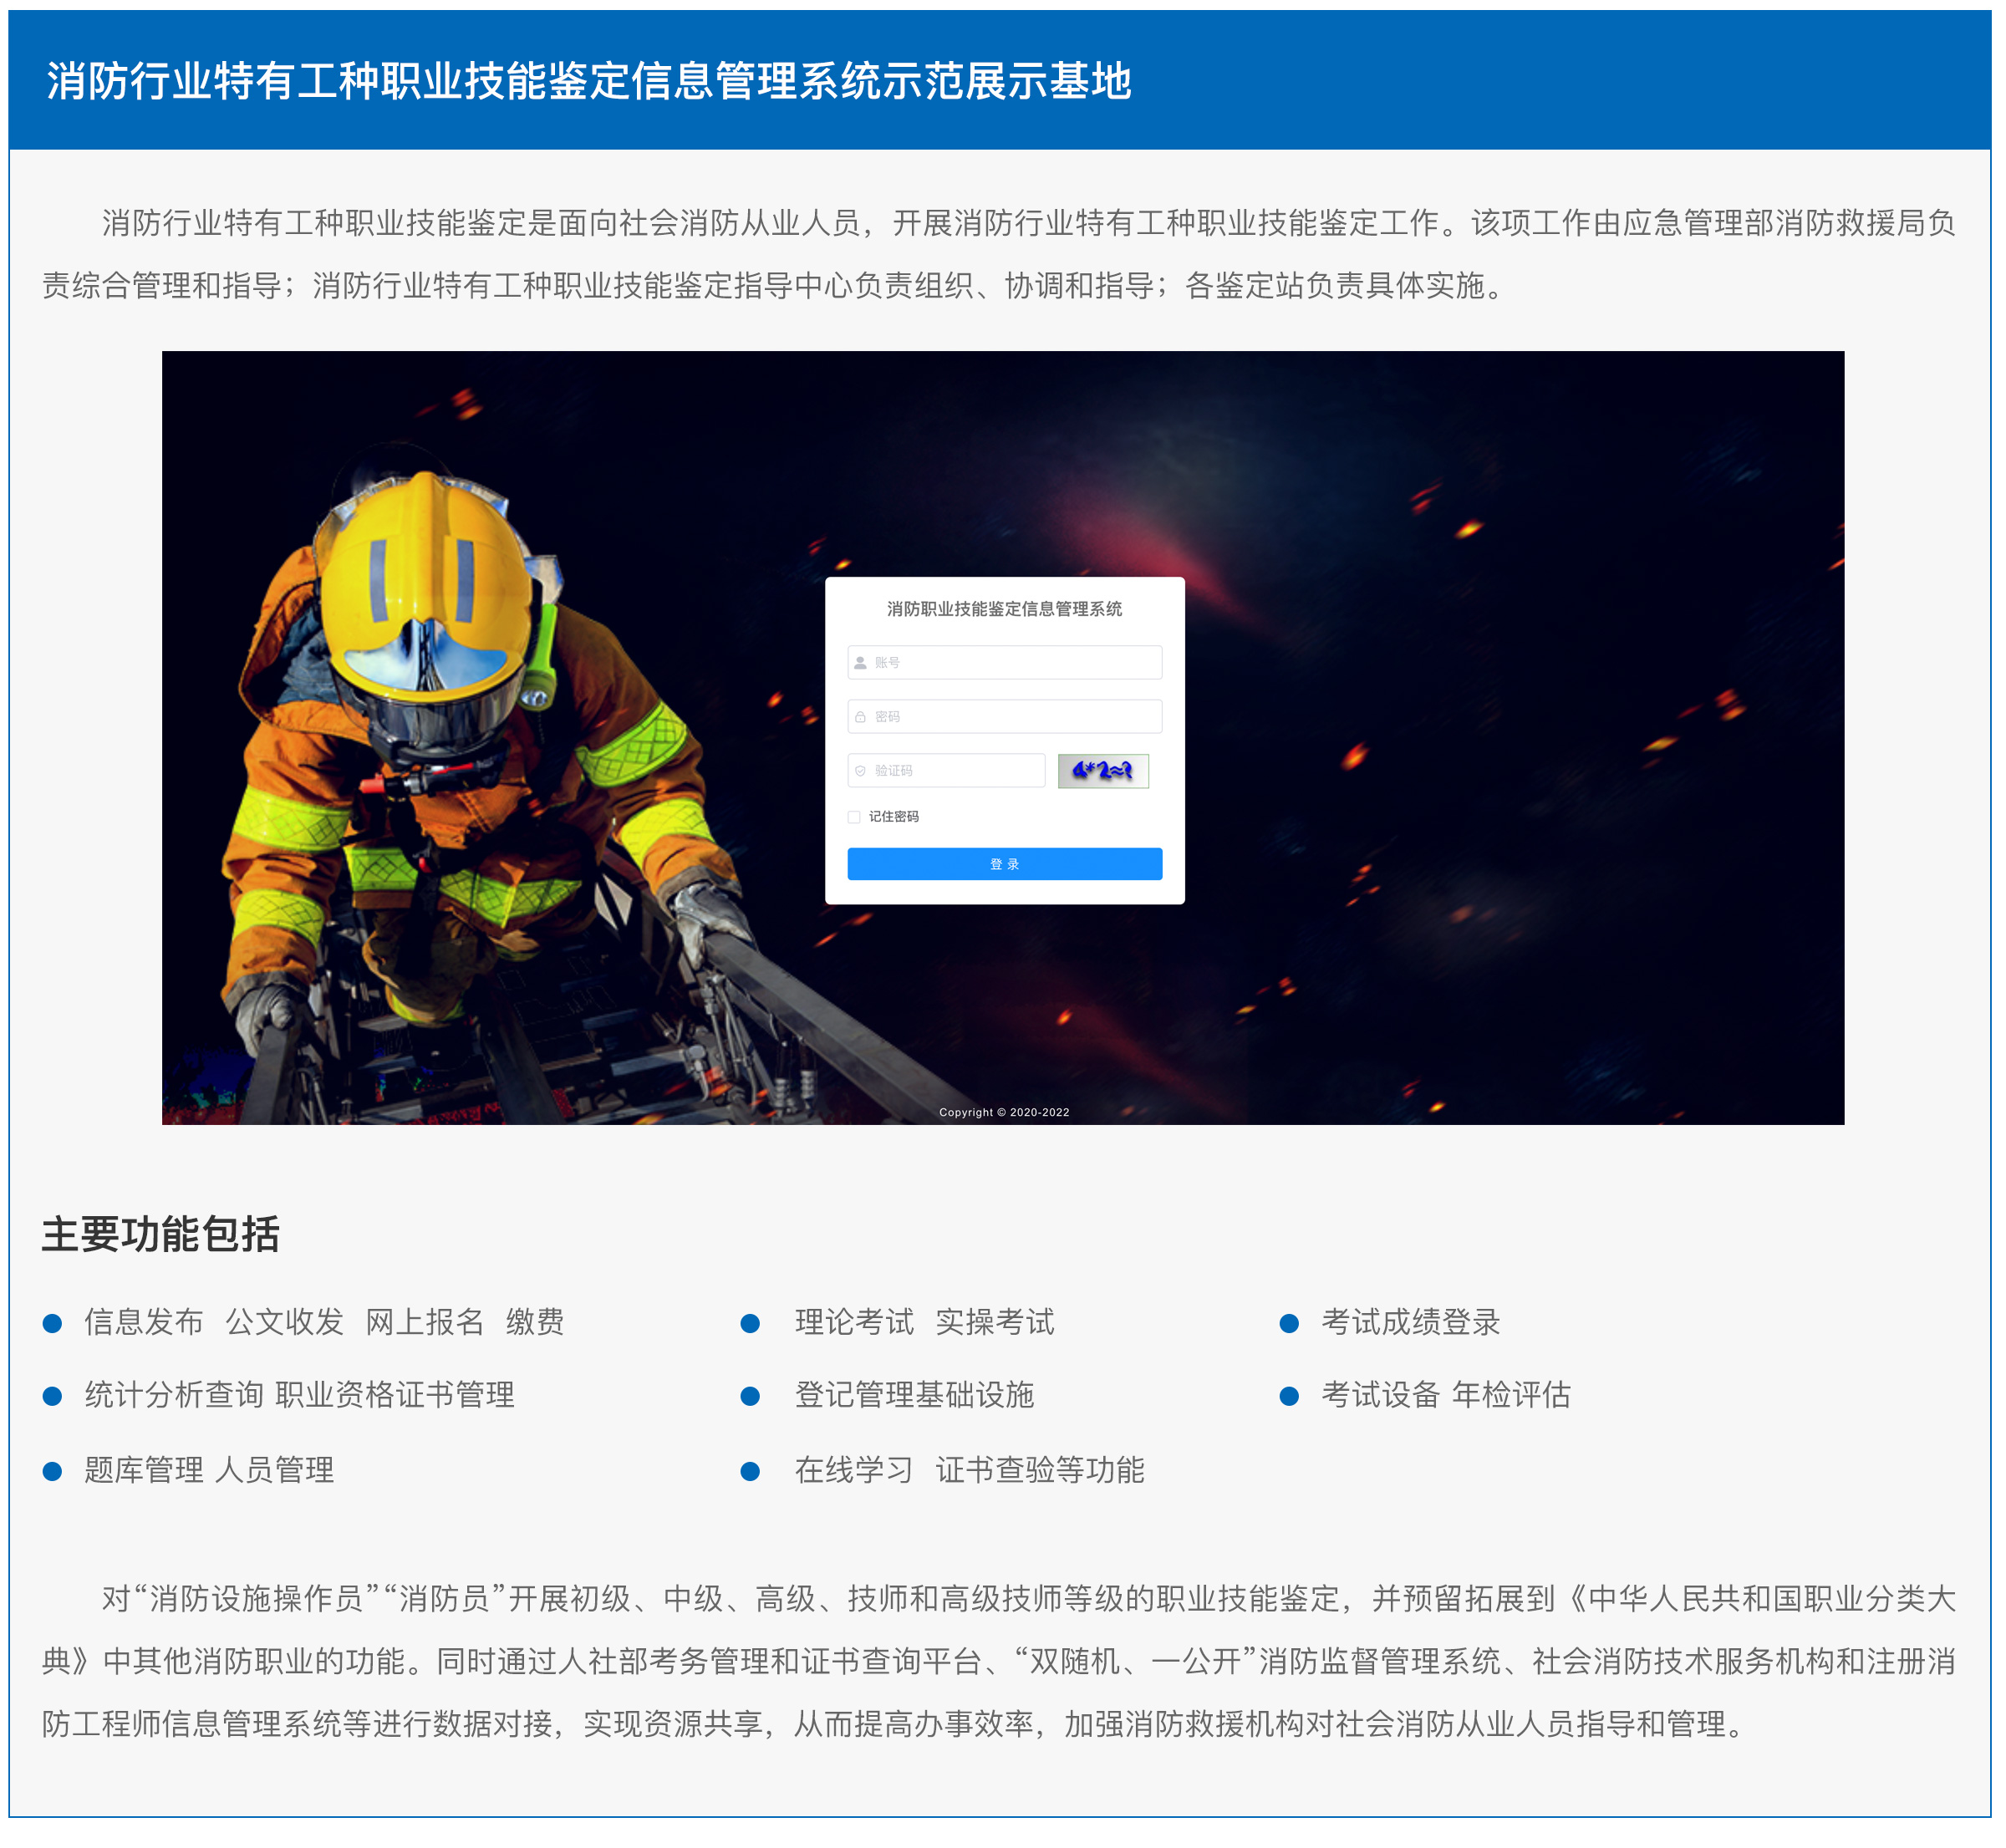 潍坊市平安消防工程有限公司